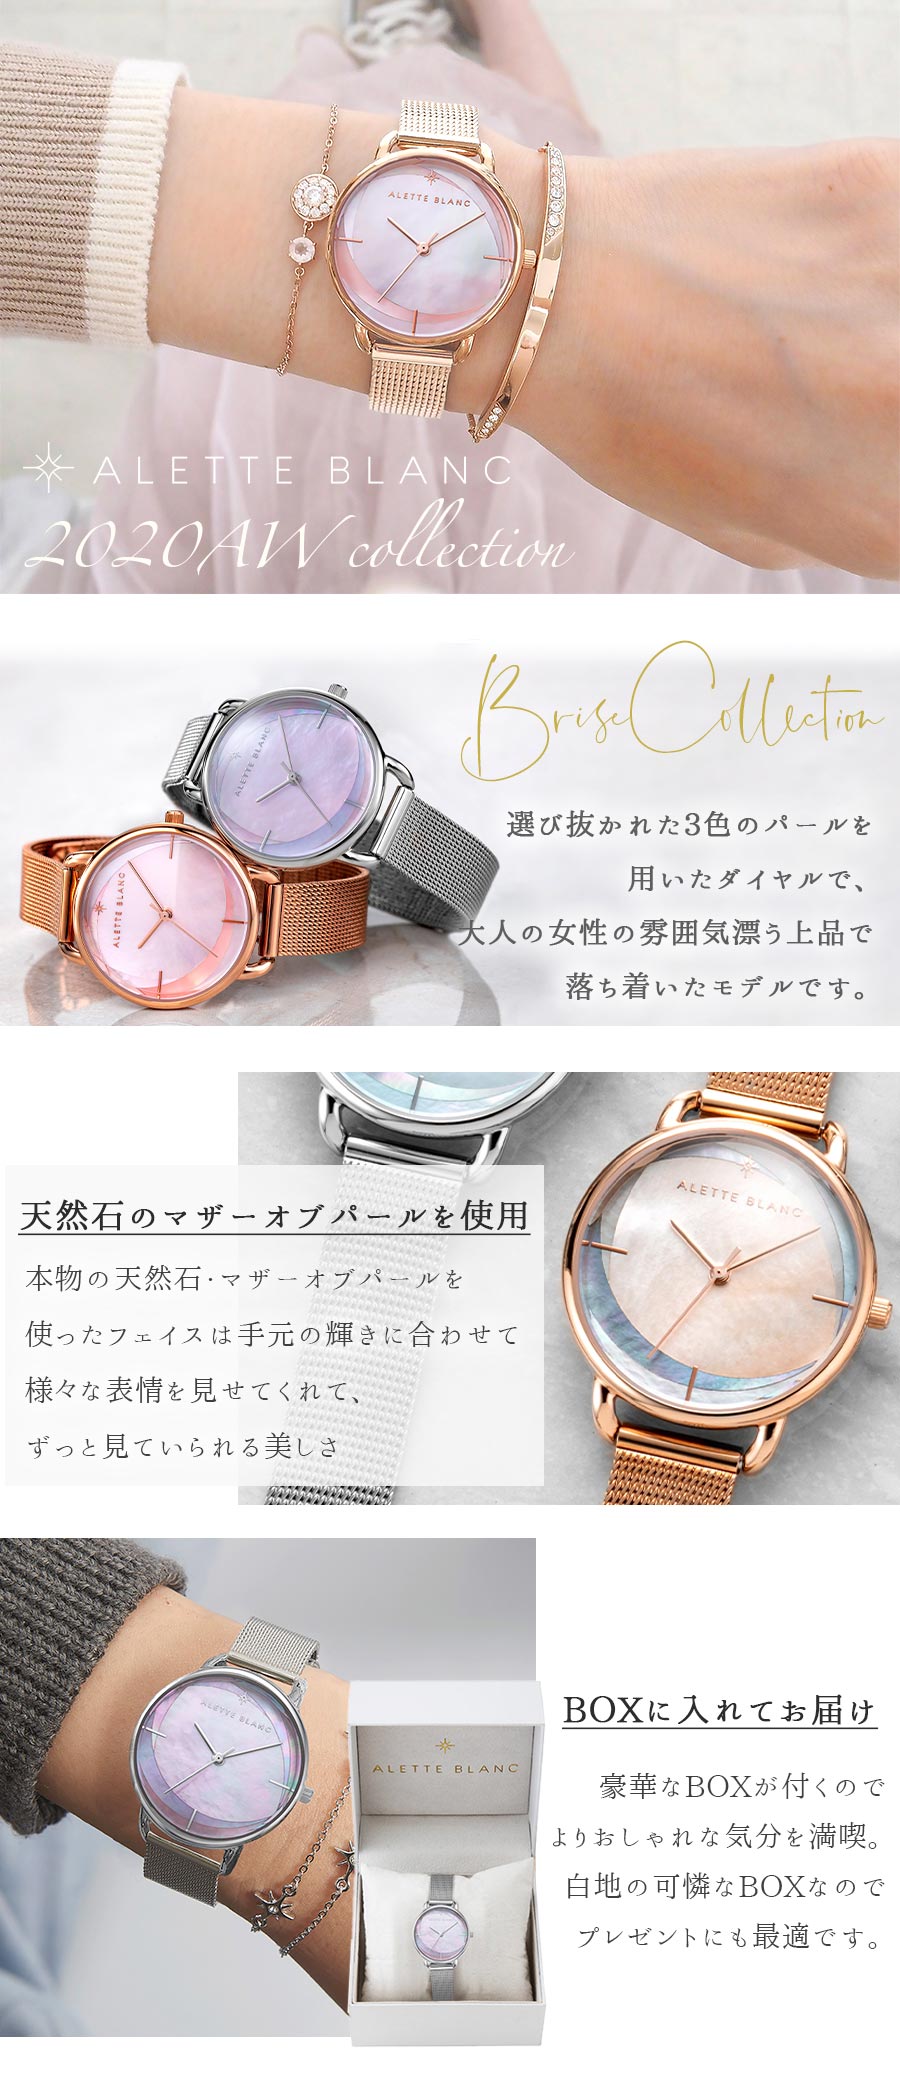 腕時計 レディース アレットブラン ALETTE BLANC レディース腕時計 ブリーズコレクション (Brise collection)  マザーオブパール 全4色 2年保証付 | コンフォートガーデンズ